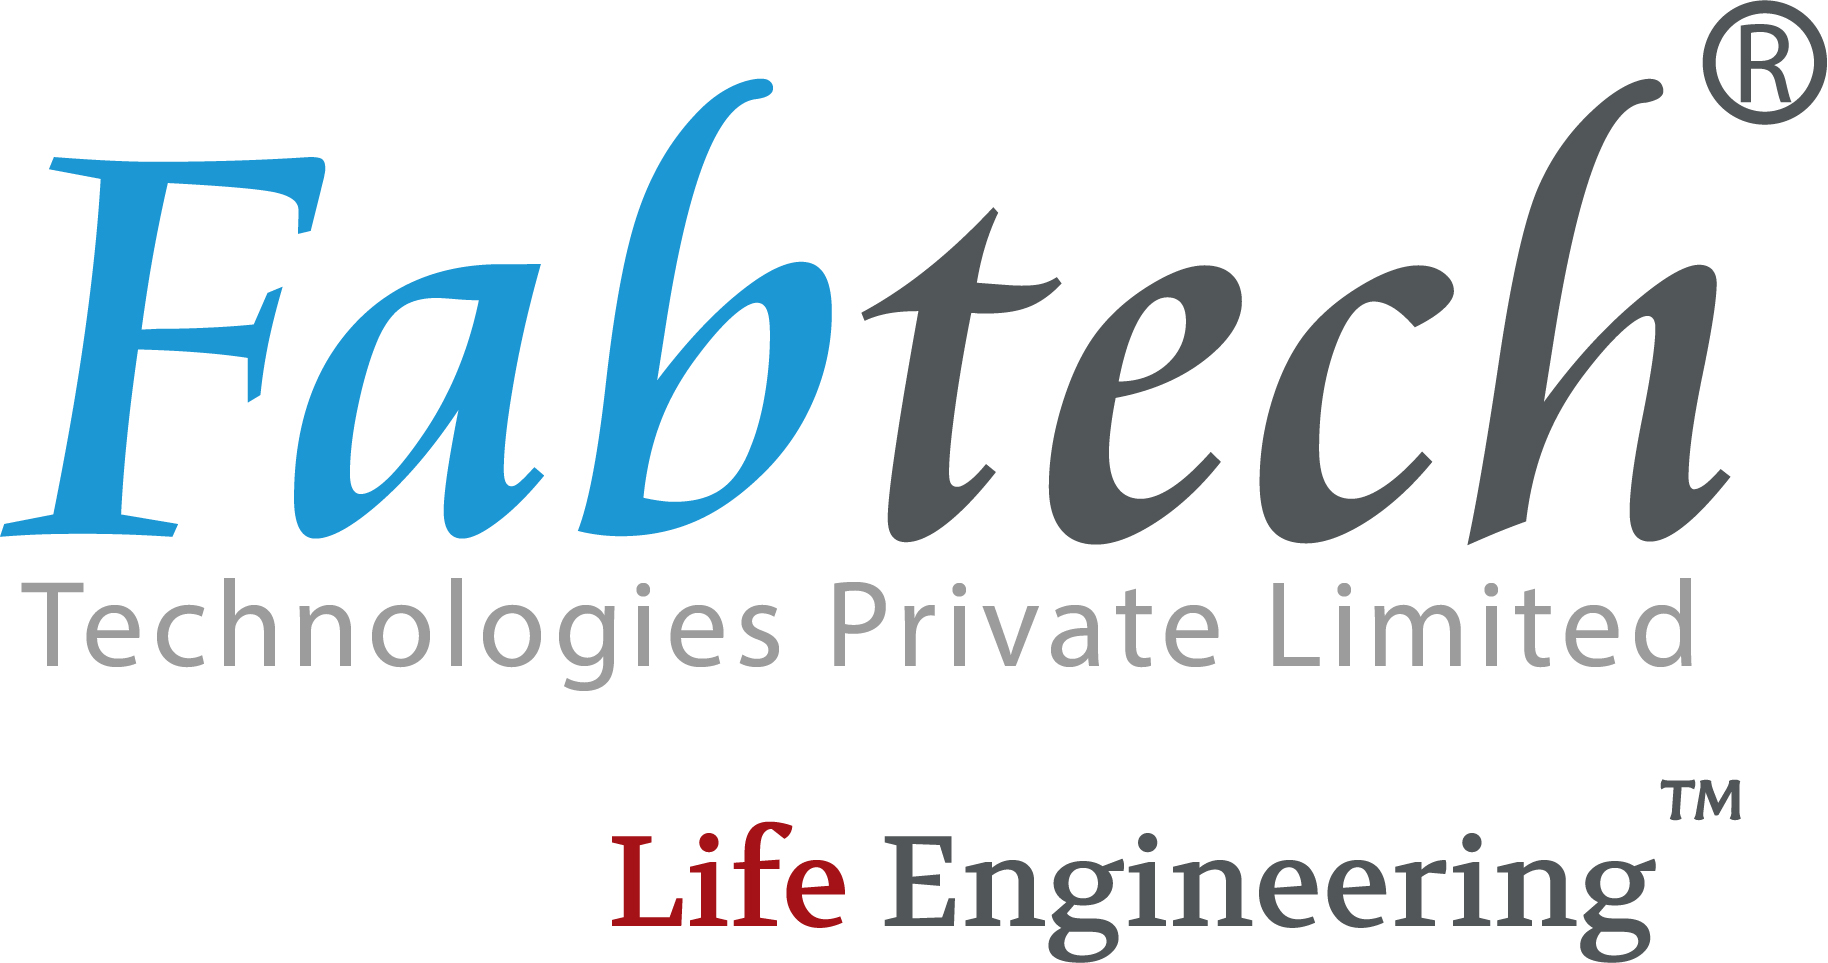 Fabtech Technologies International Ltd.